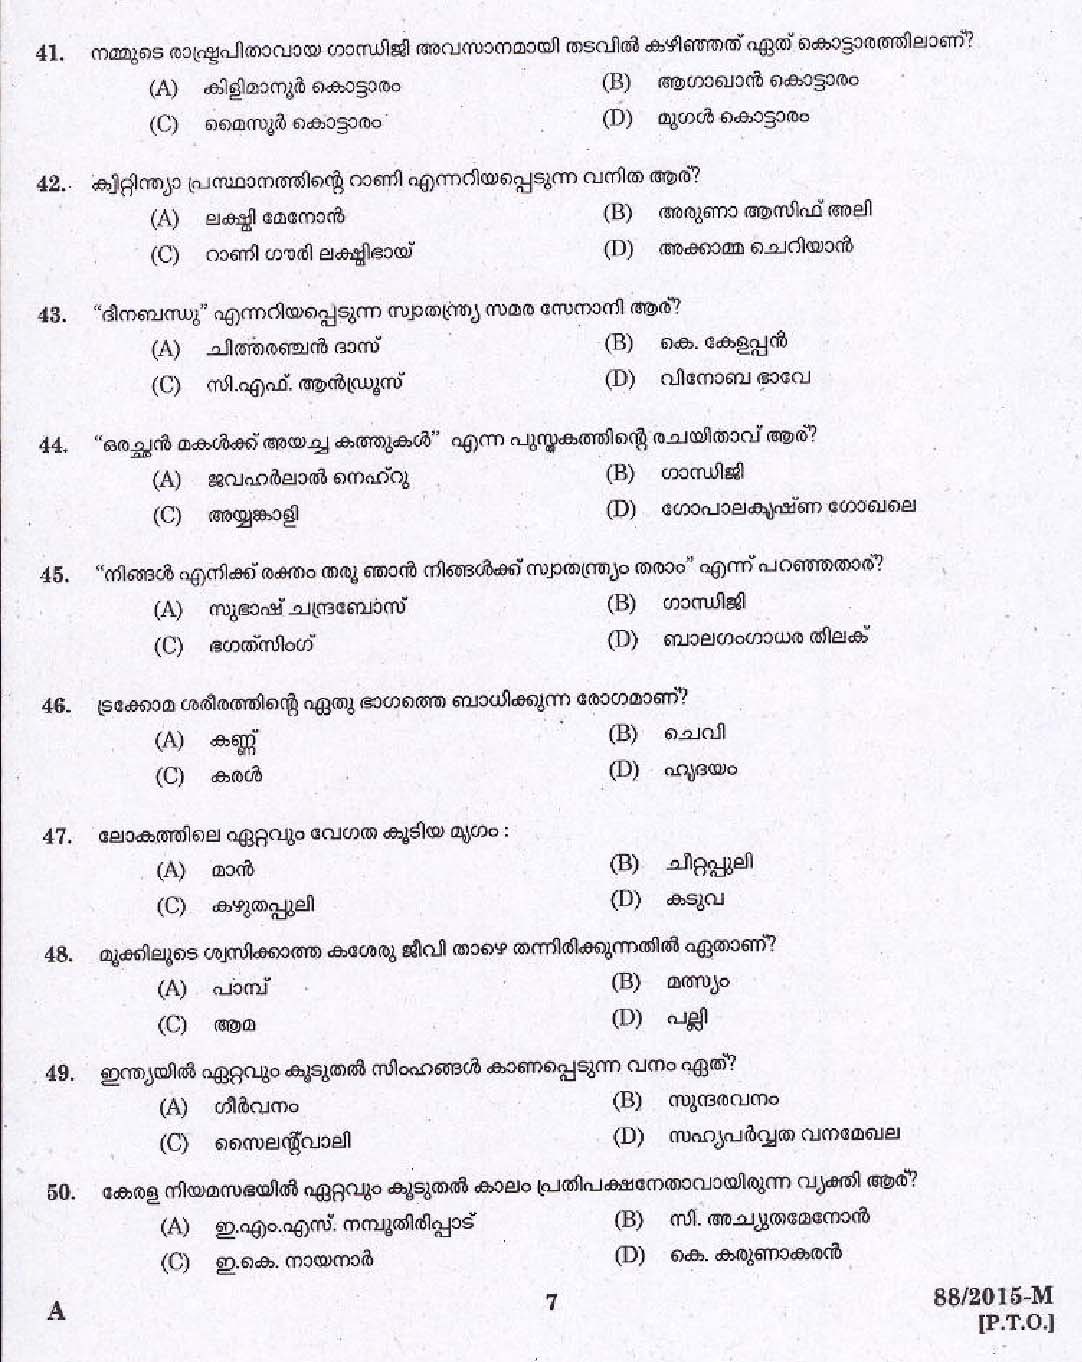 Kerala PSC Driver Grade II Exam 2015 Question Paper Code 882015 M 5